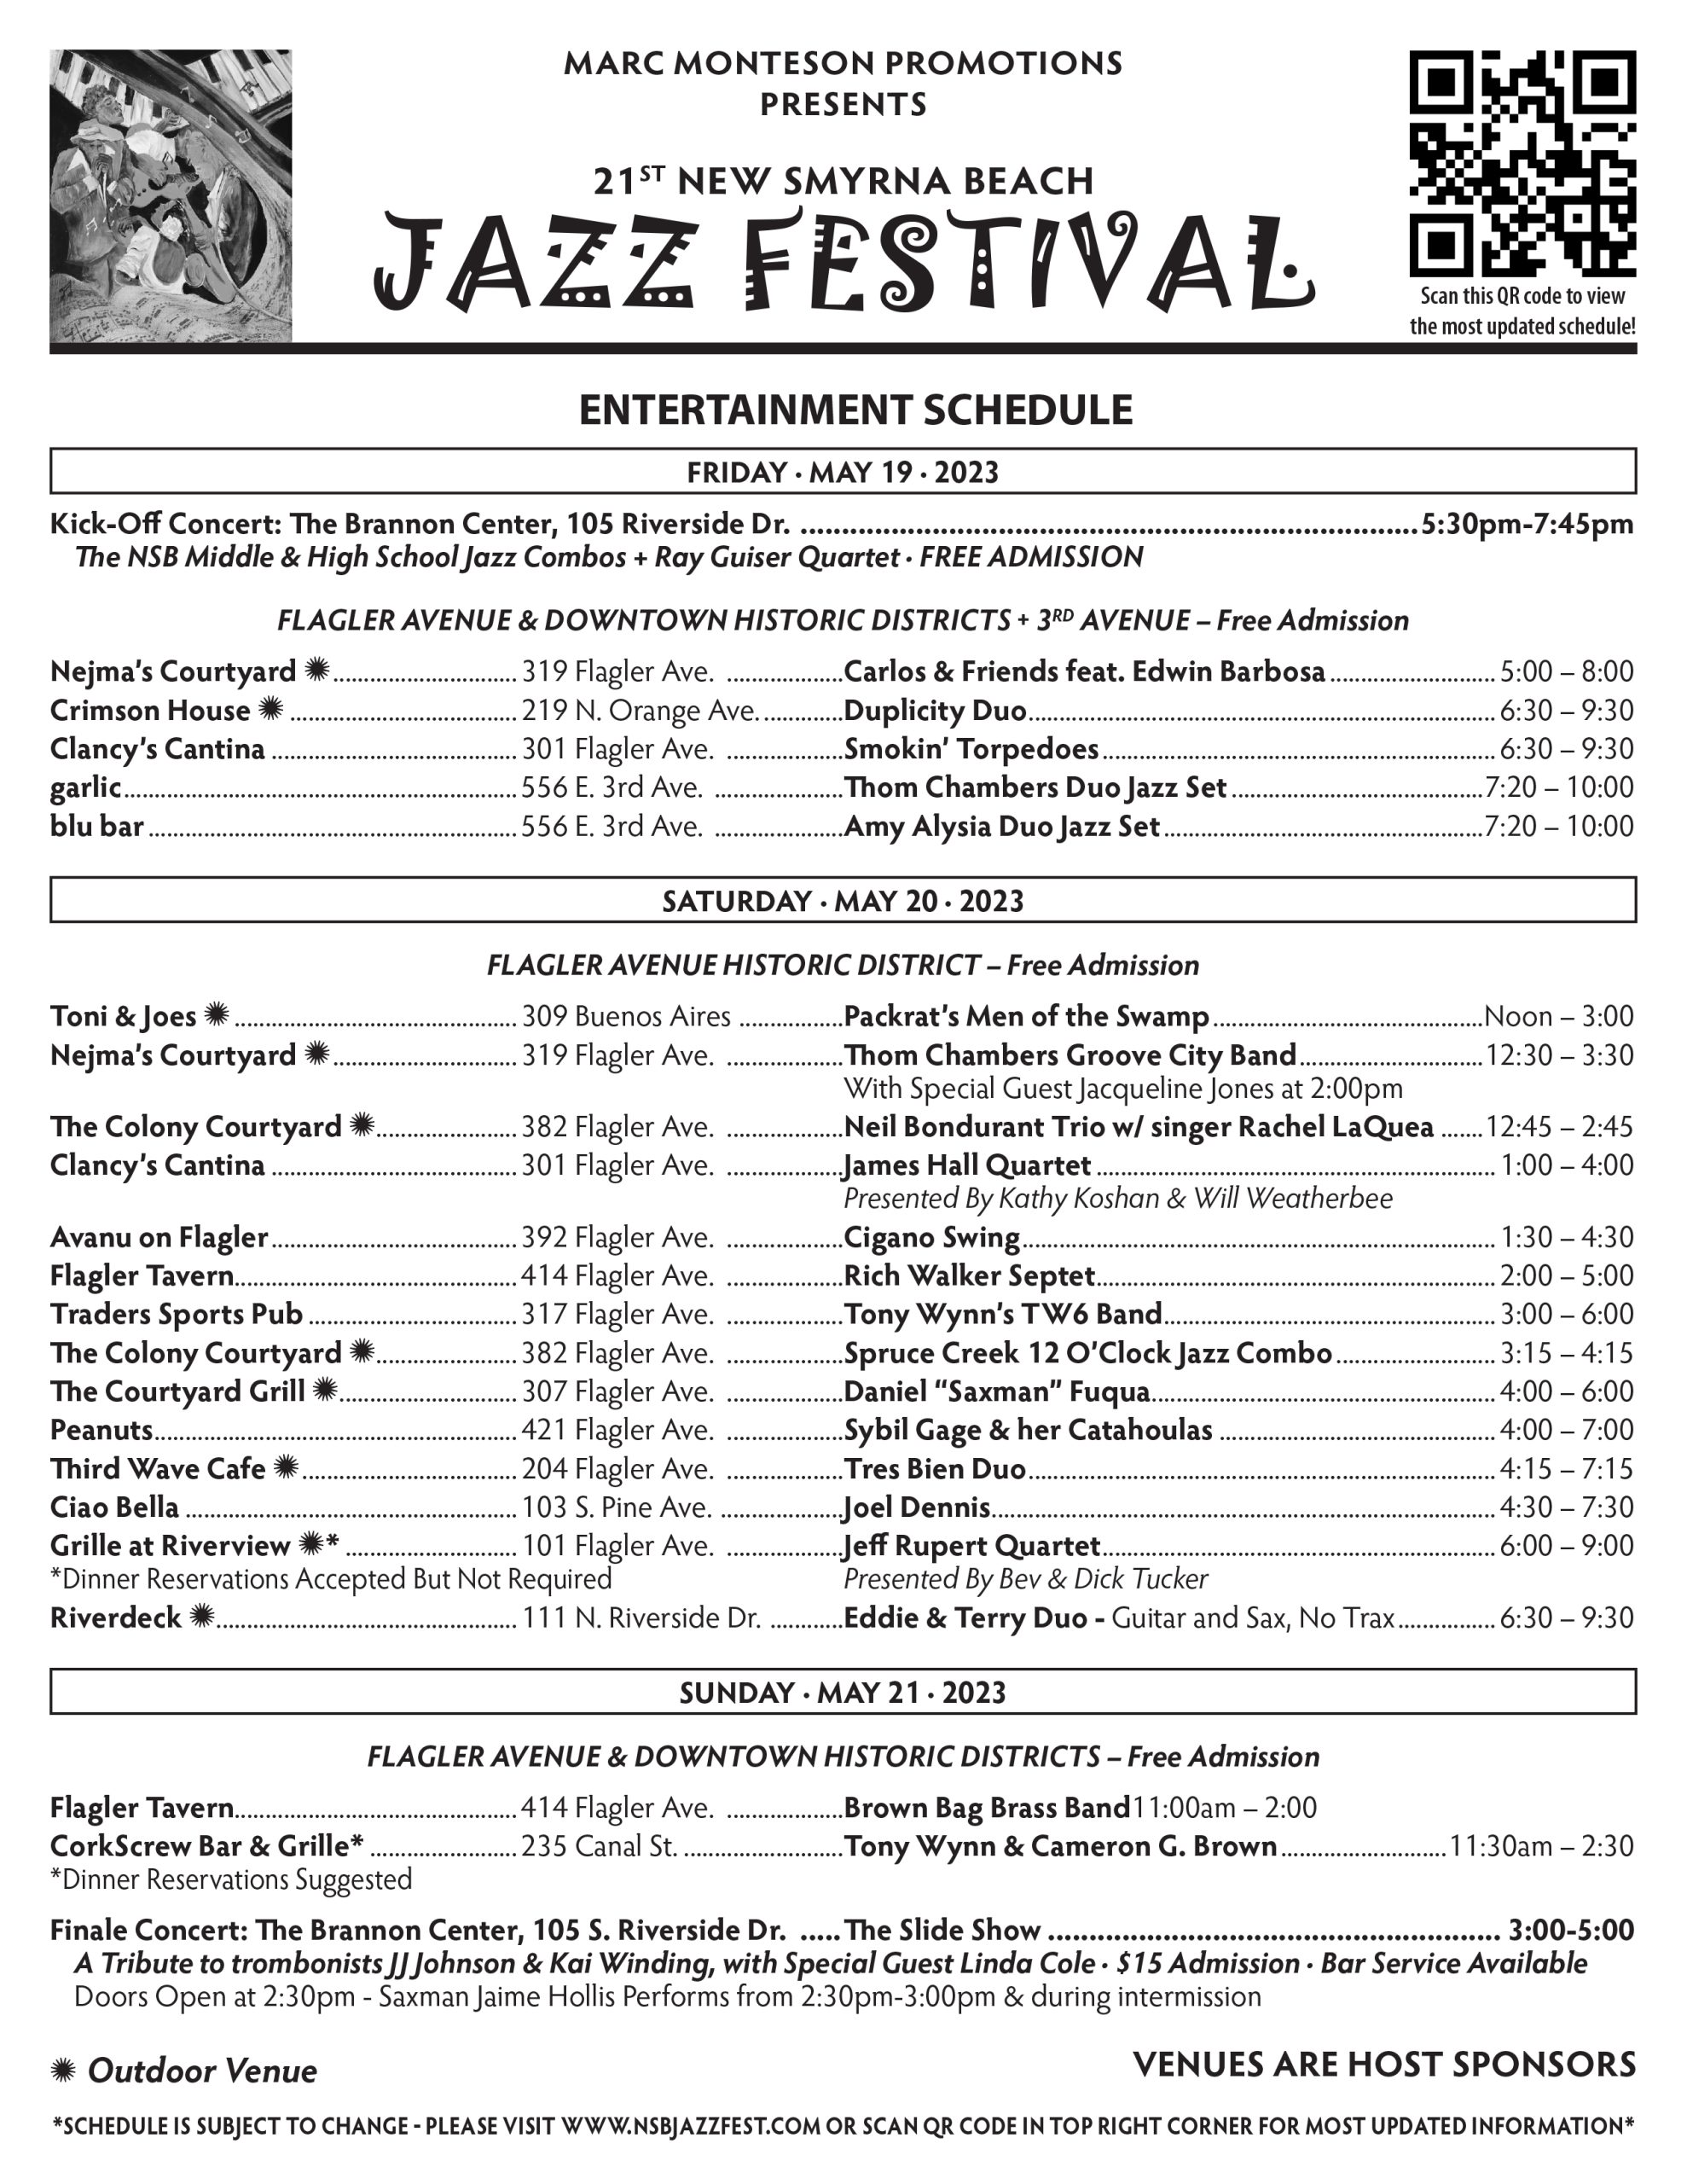 New Smyrna Beach Jazz Festival | New Smyrna Beach Jazz Festivals